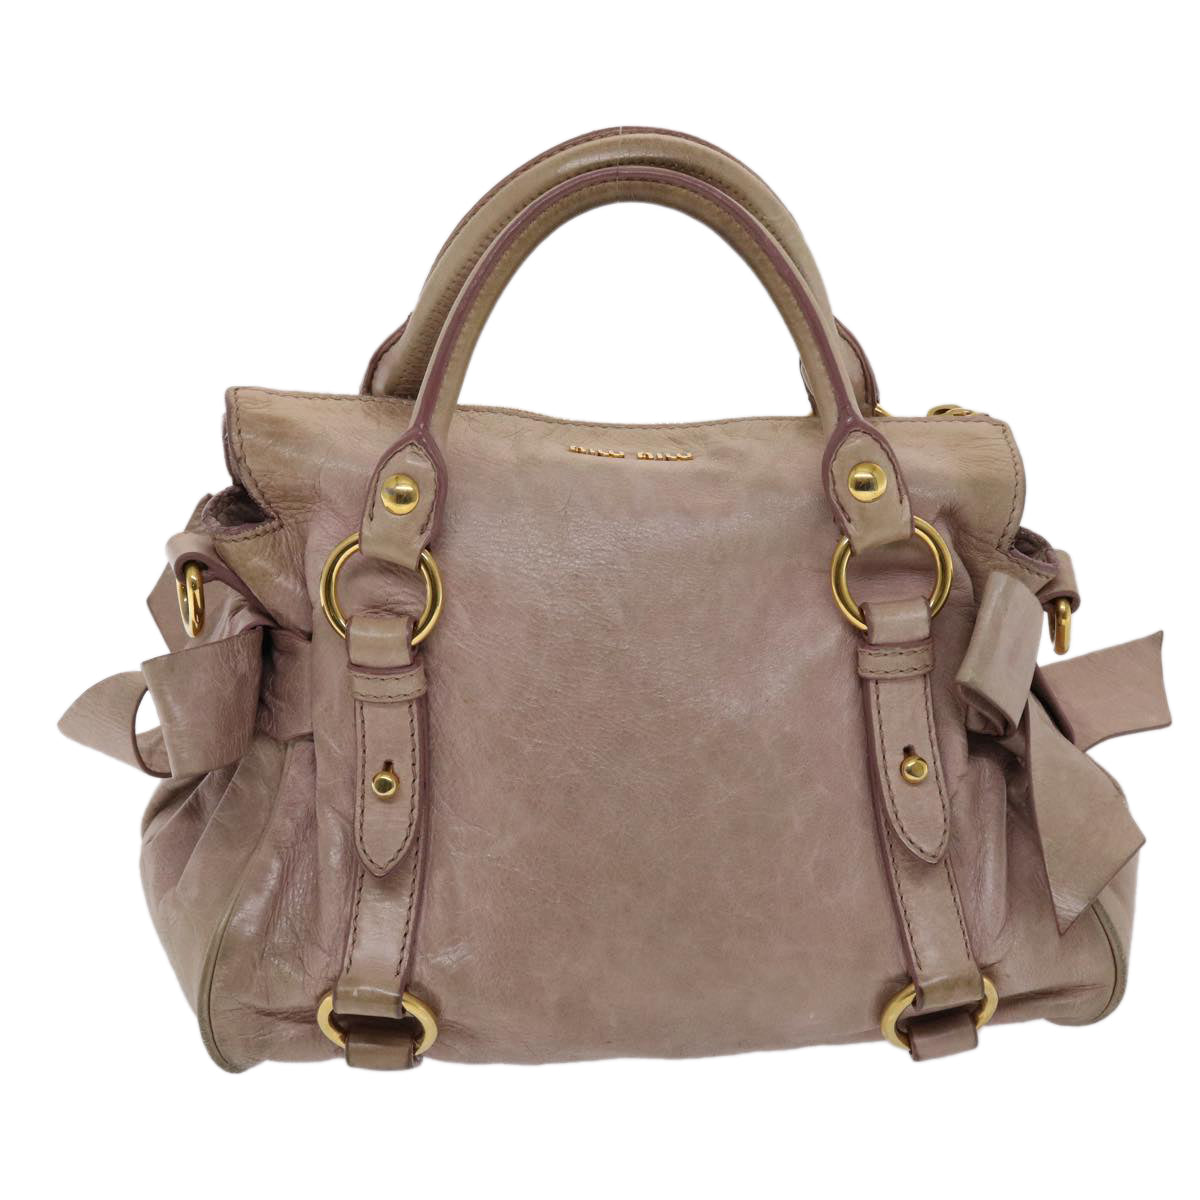 Miu Miu Hand Bag Leather 2way Pink Auth yk7991